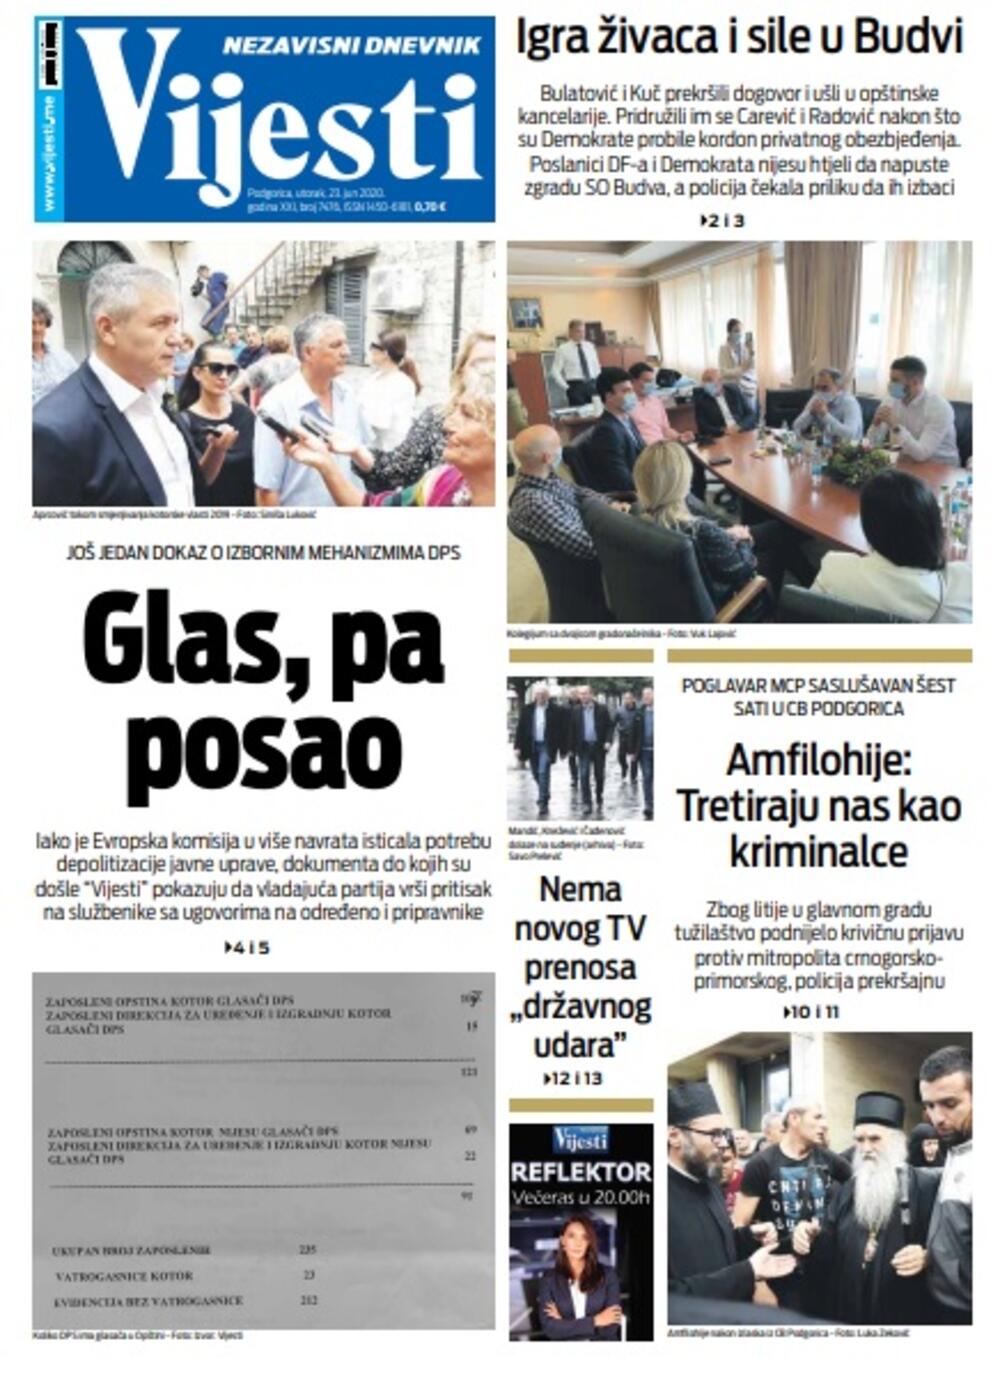 Naslovna strana "Vijesti" za utorak 23. jun 2020. godine, Foto: Vijesti